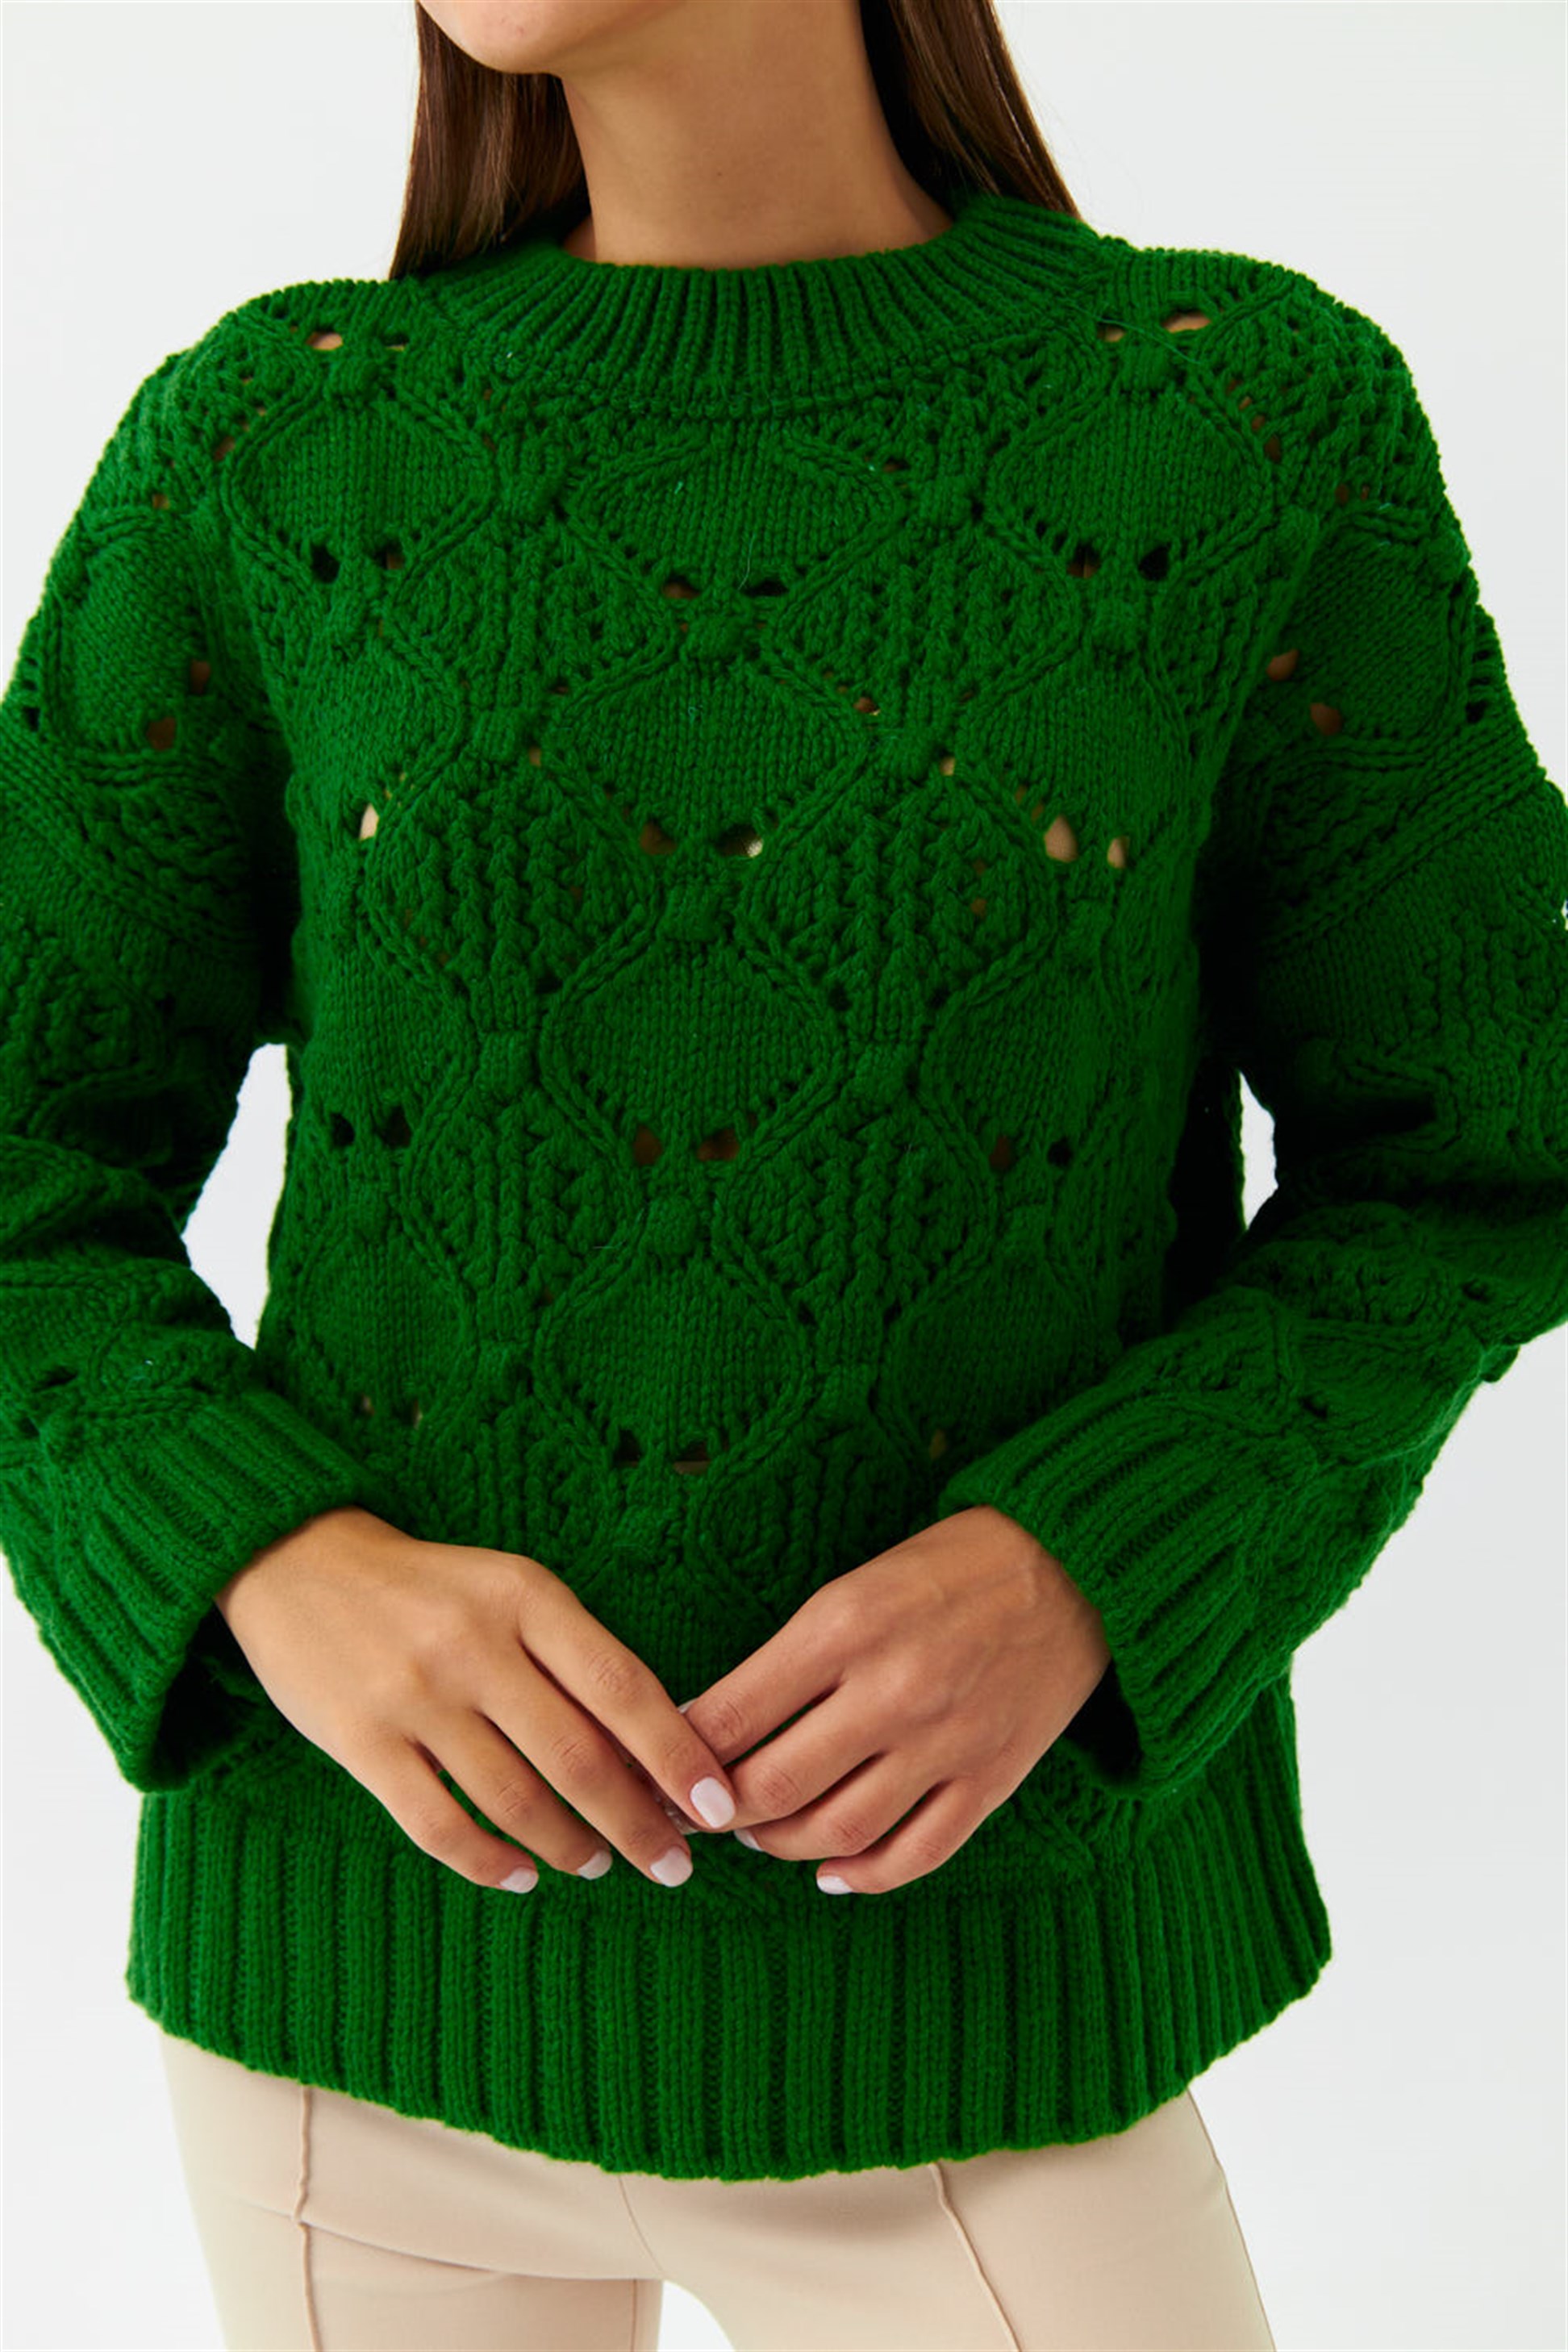 Grün M Rabatt 63 % DAMEN Pullovers & Sweatshirts Pullover Stricken Naëlle Pullover 